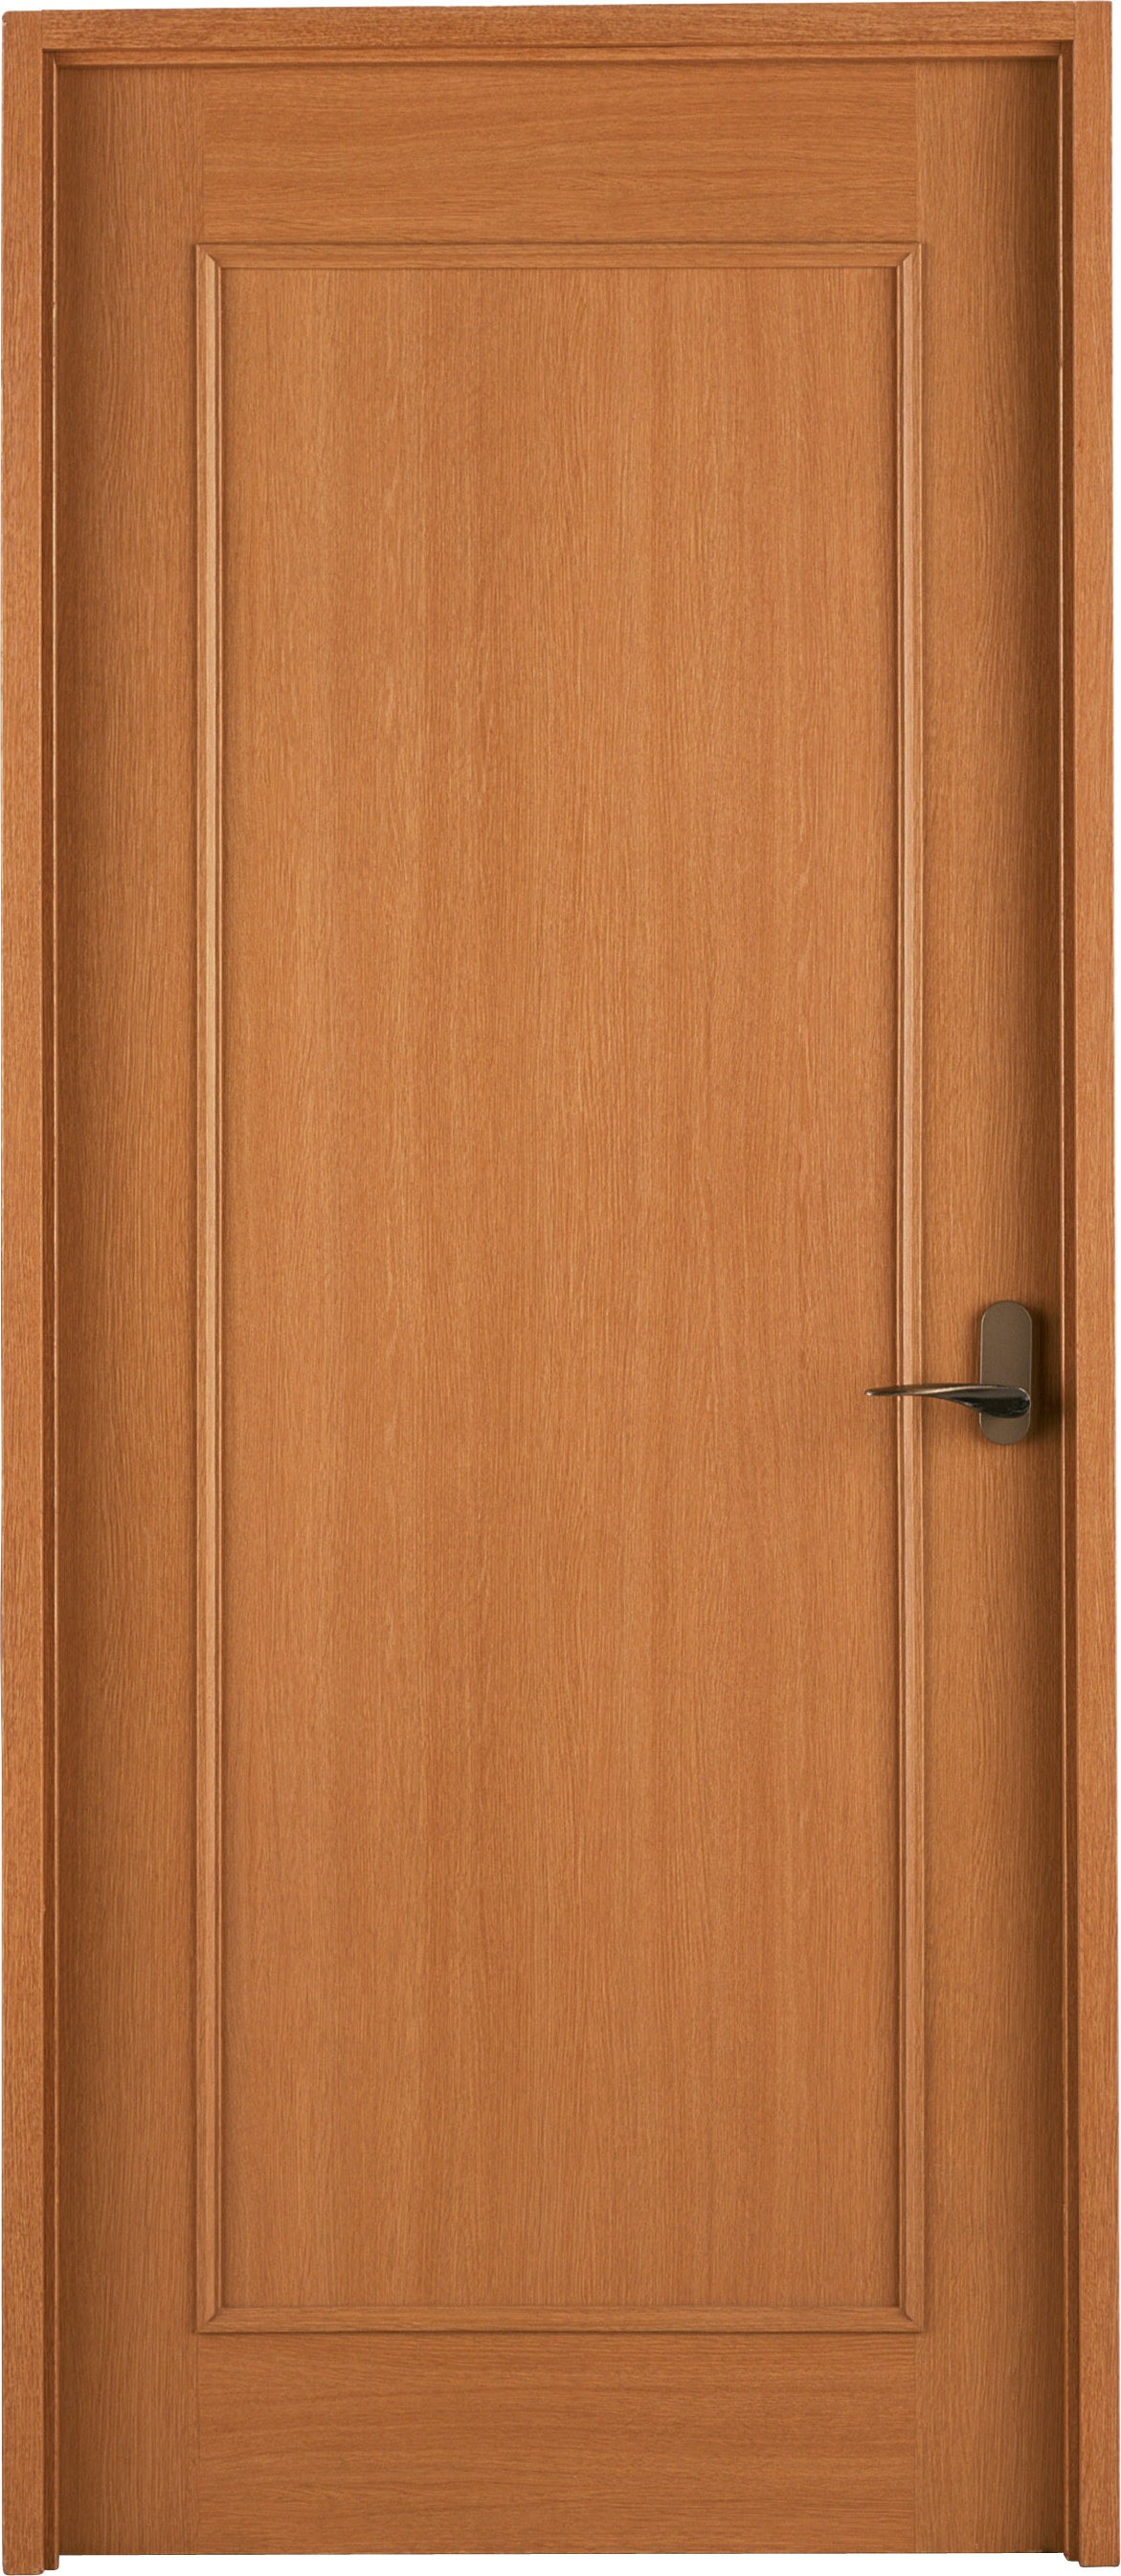 Exterior Wooden Door PNG Transparent Image